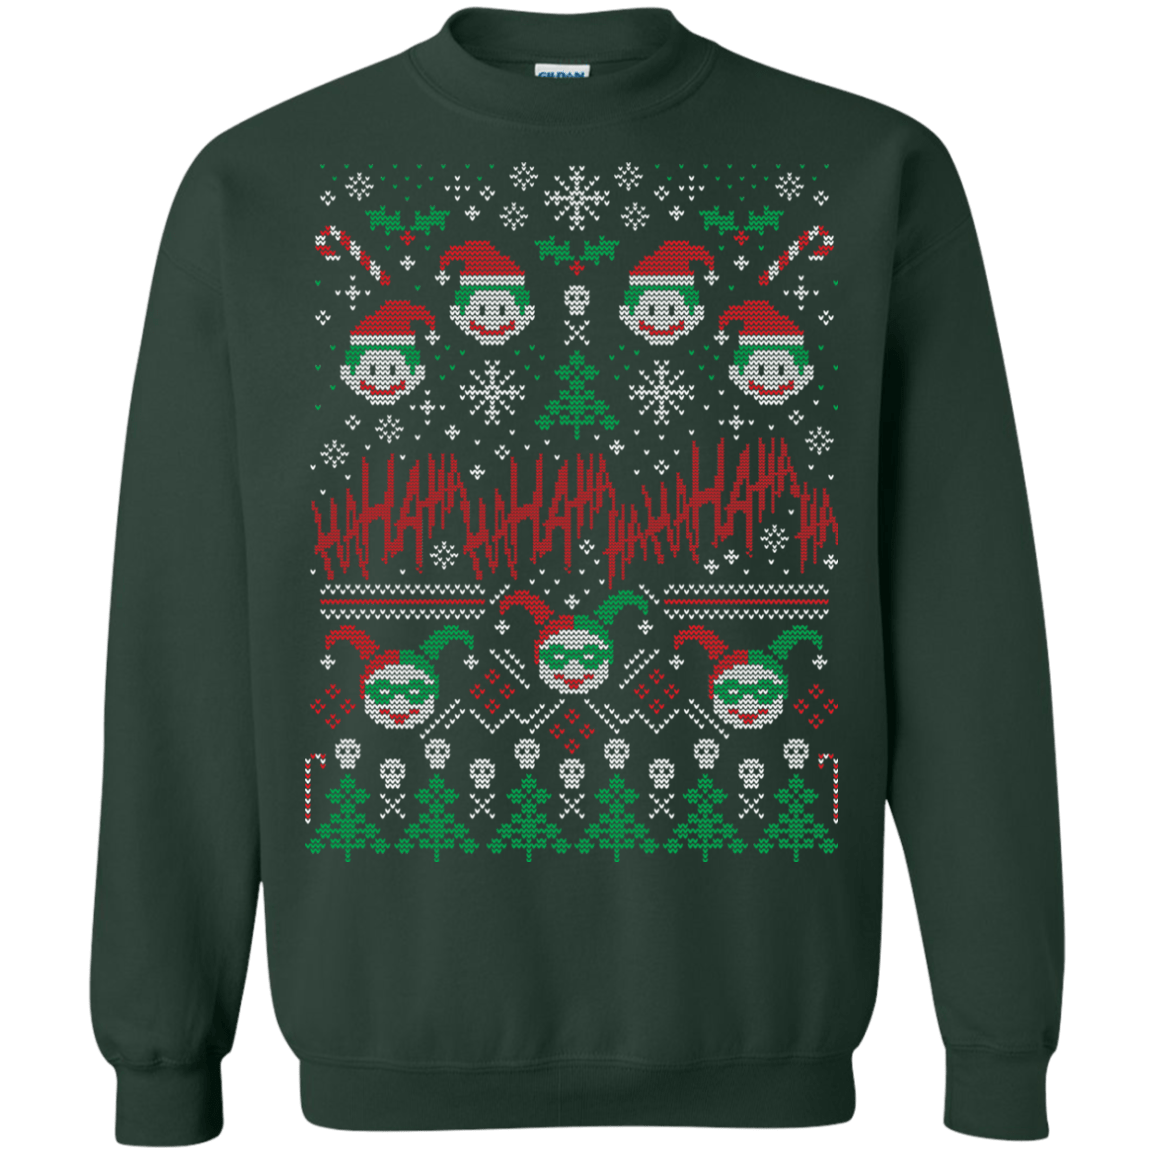 Sweatshirts Forest Green / Small HaHa Holidays Crewneck Sweatshirt